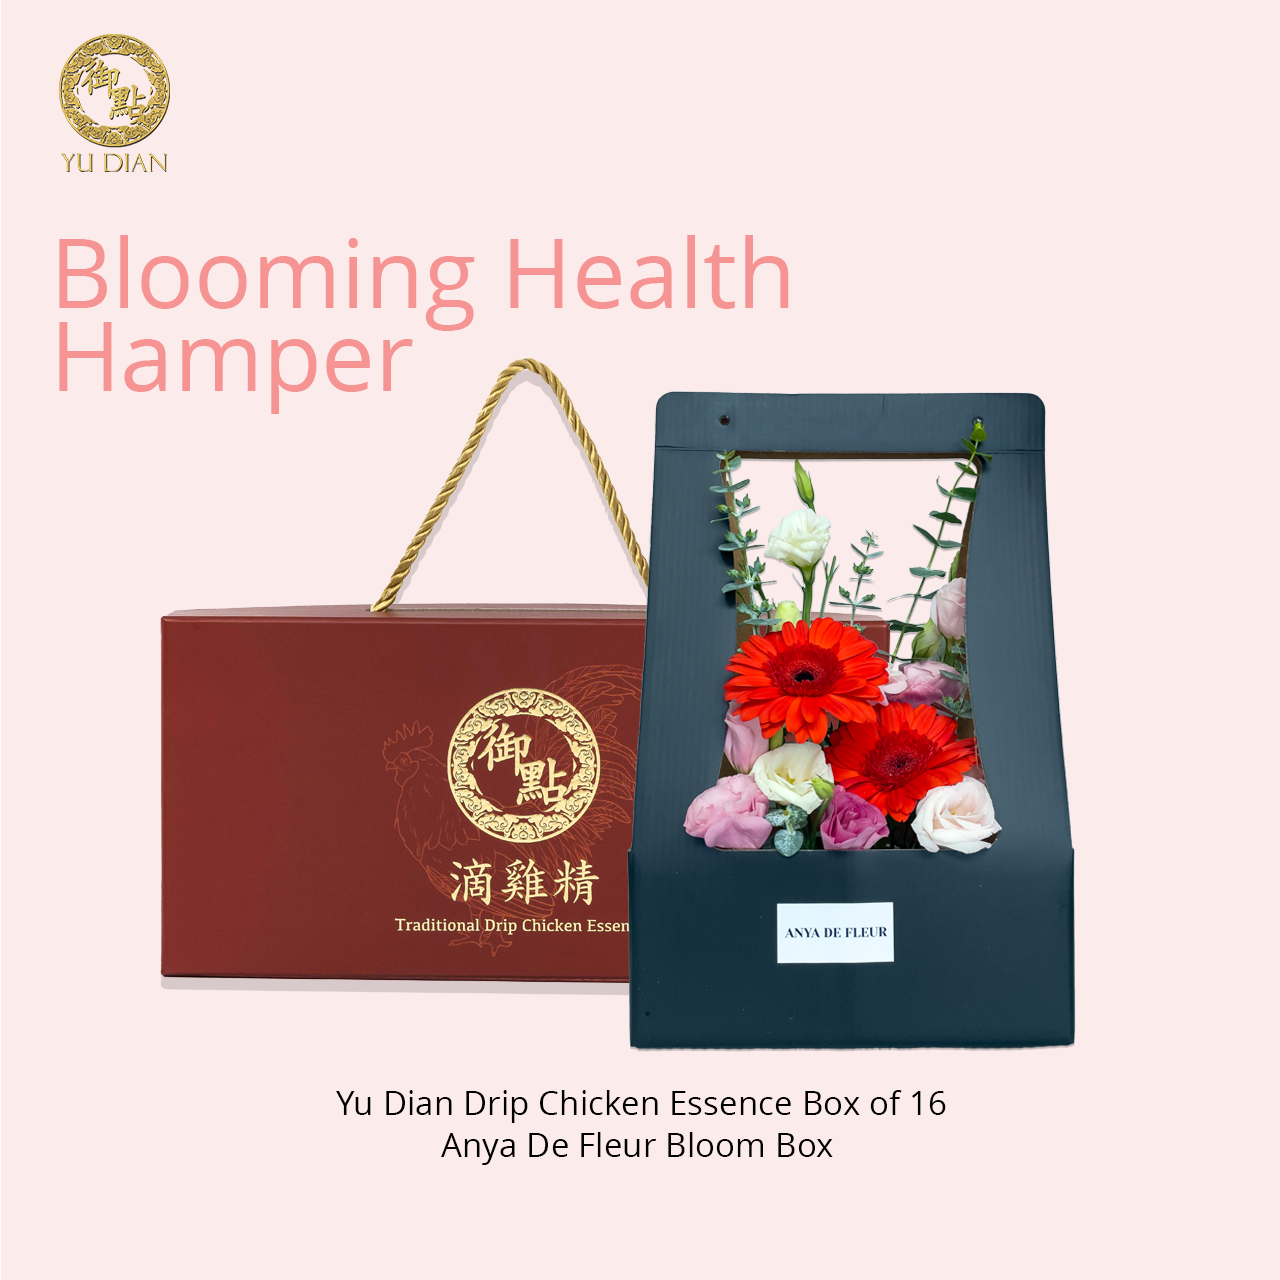 Blooming Health Hamper